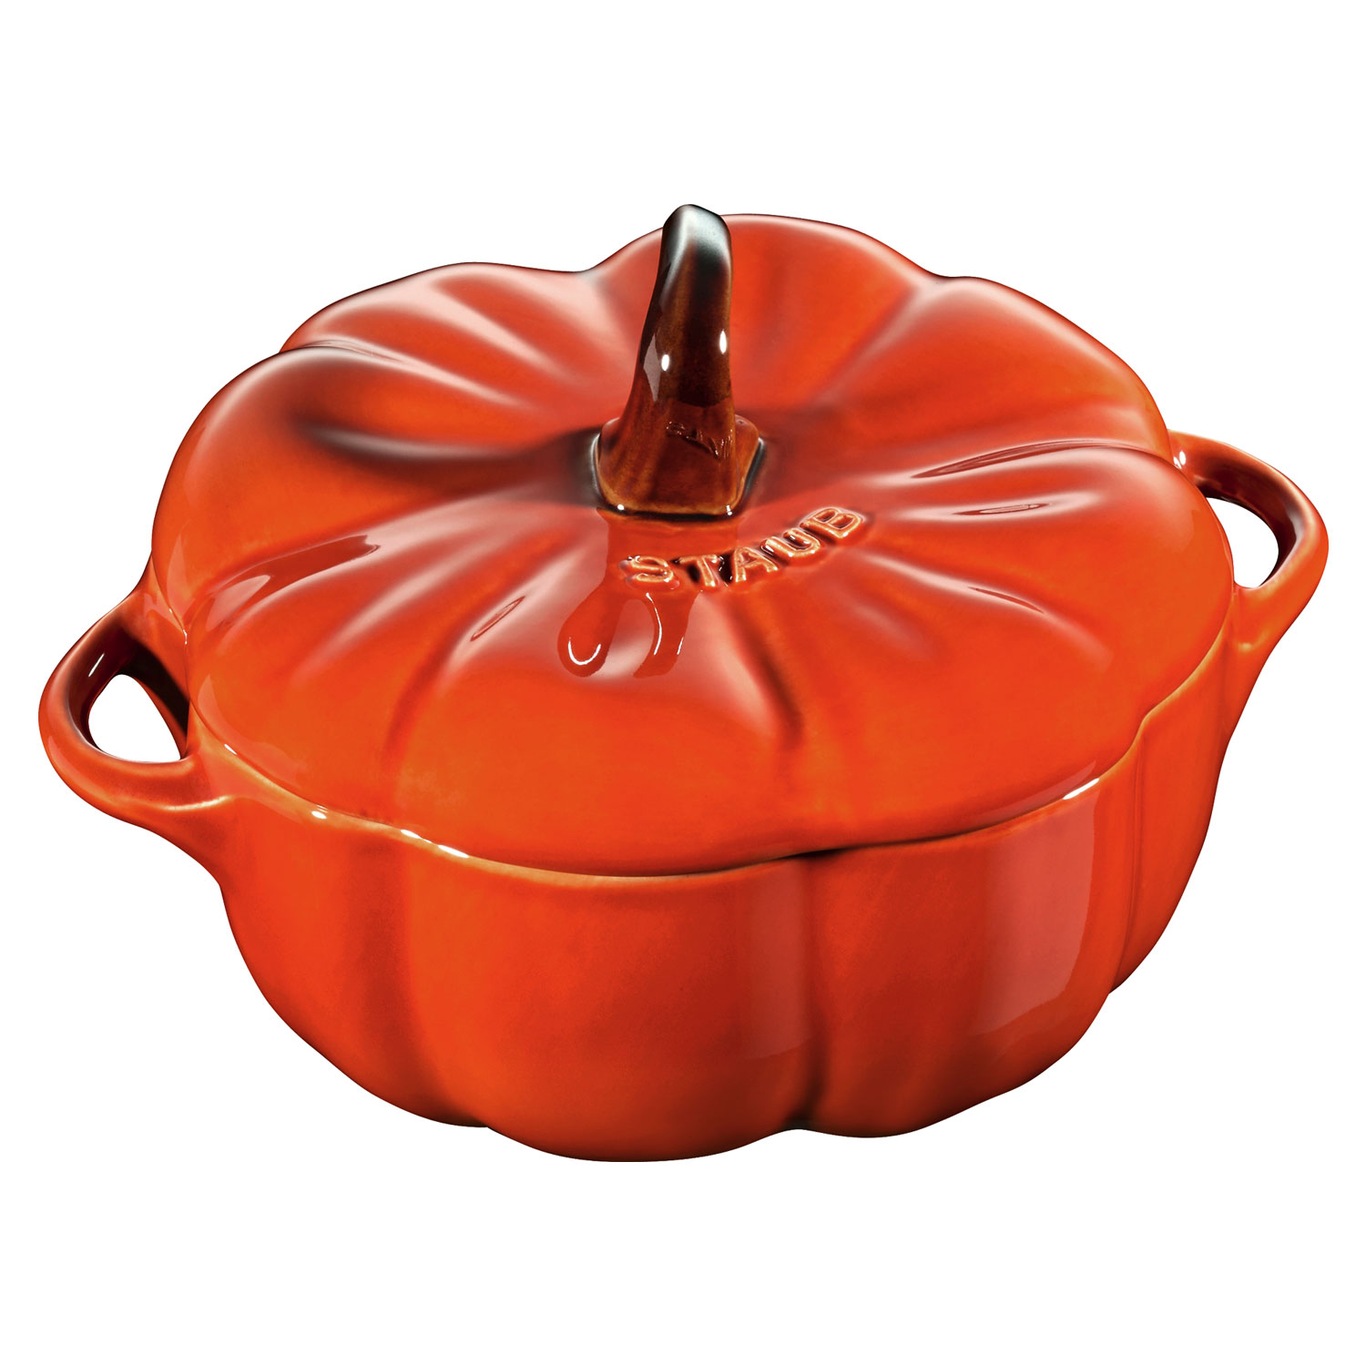 https://royaldesign.com/image/2/staub-staub-petite-pumpkin-cocotte-0?w=800&quality=80